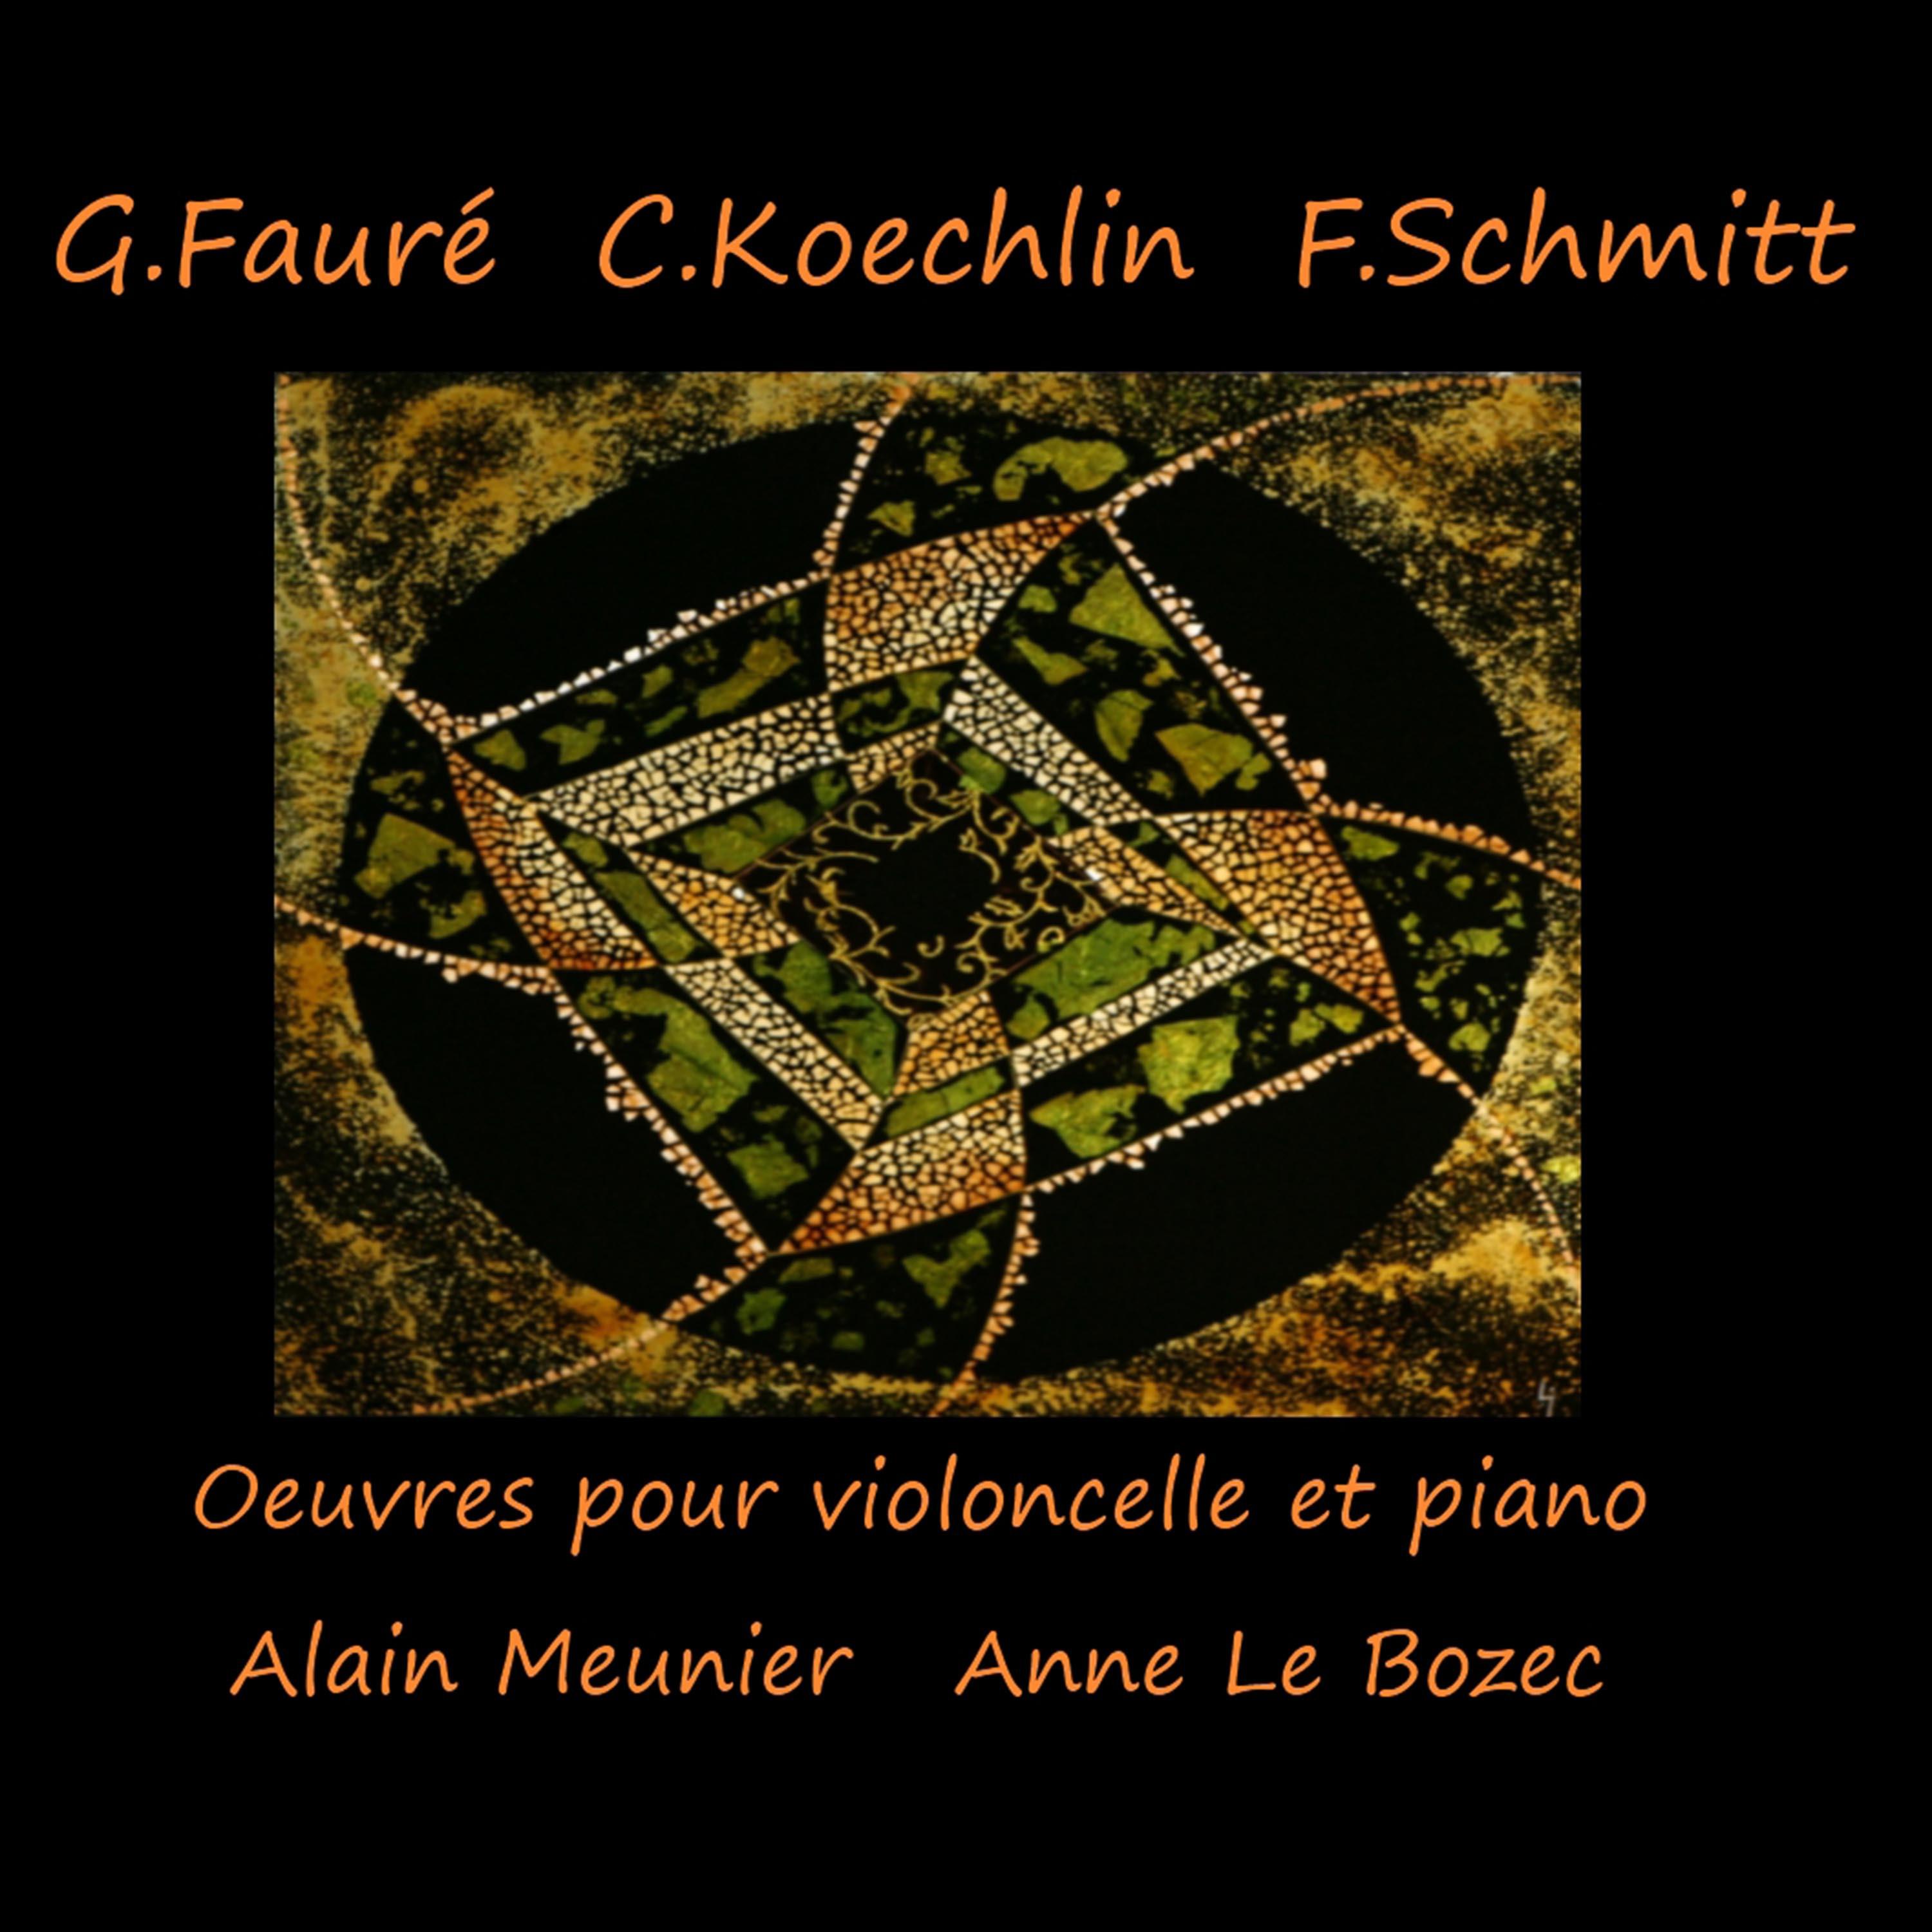 Sonate pour violoncelle et piano No. 2 en Sol Mineur, Op. 117: I. Allegro